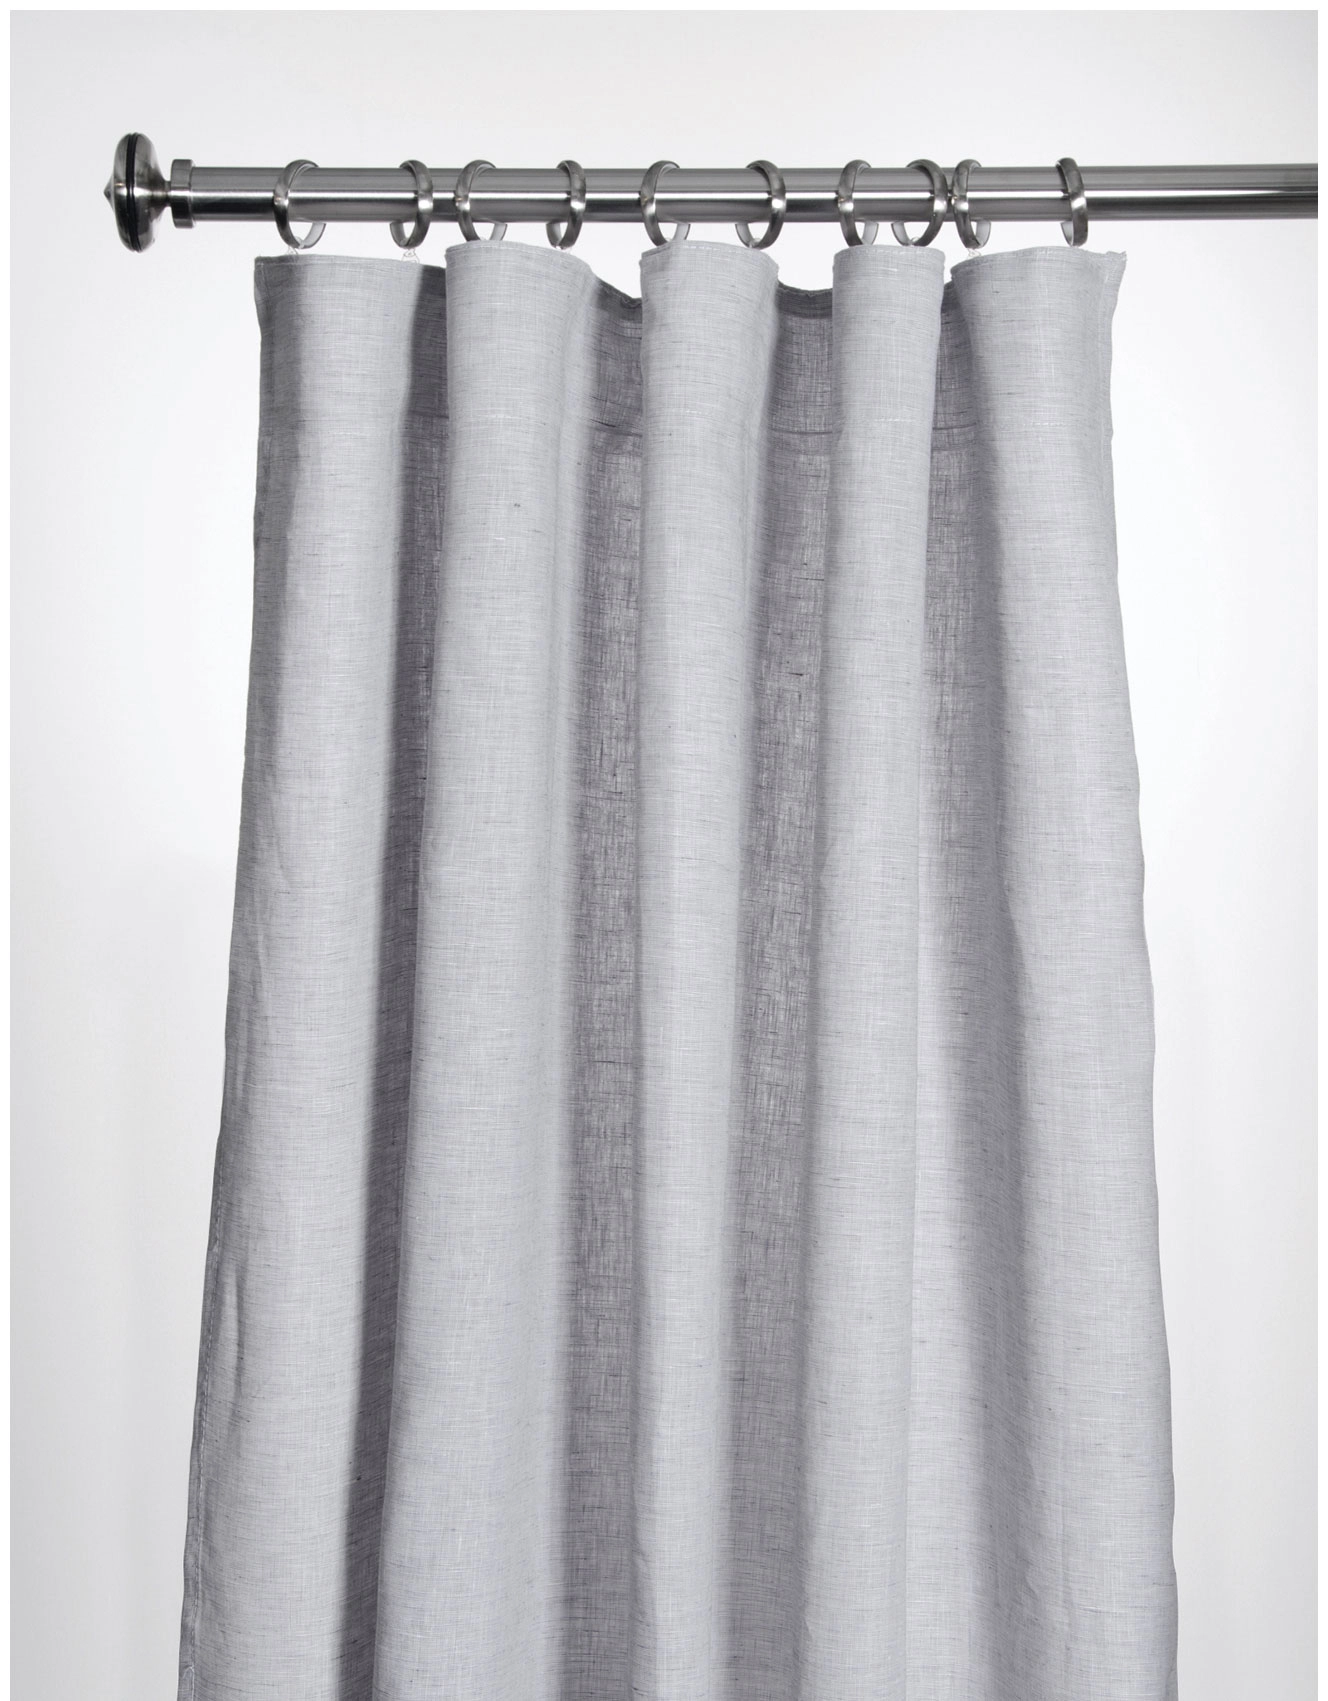 Curtain, LINNÉA, grey linen curtain